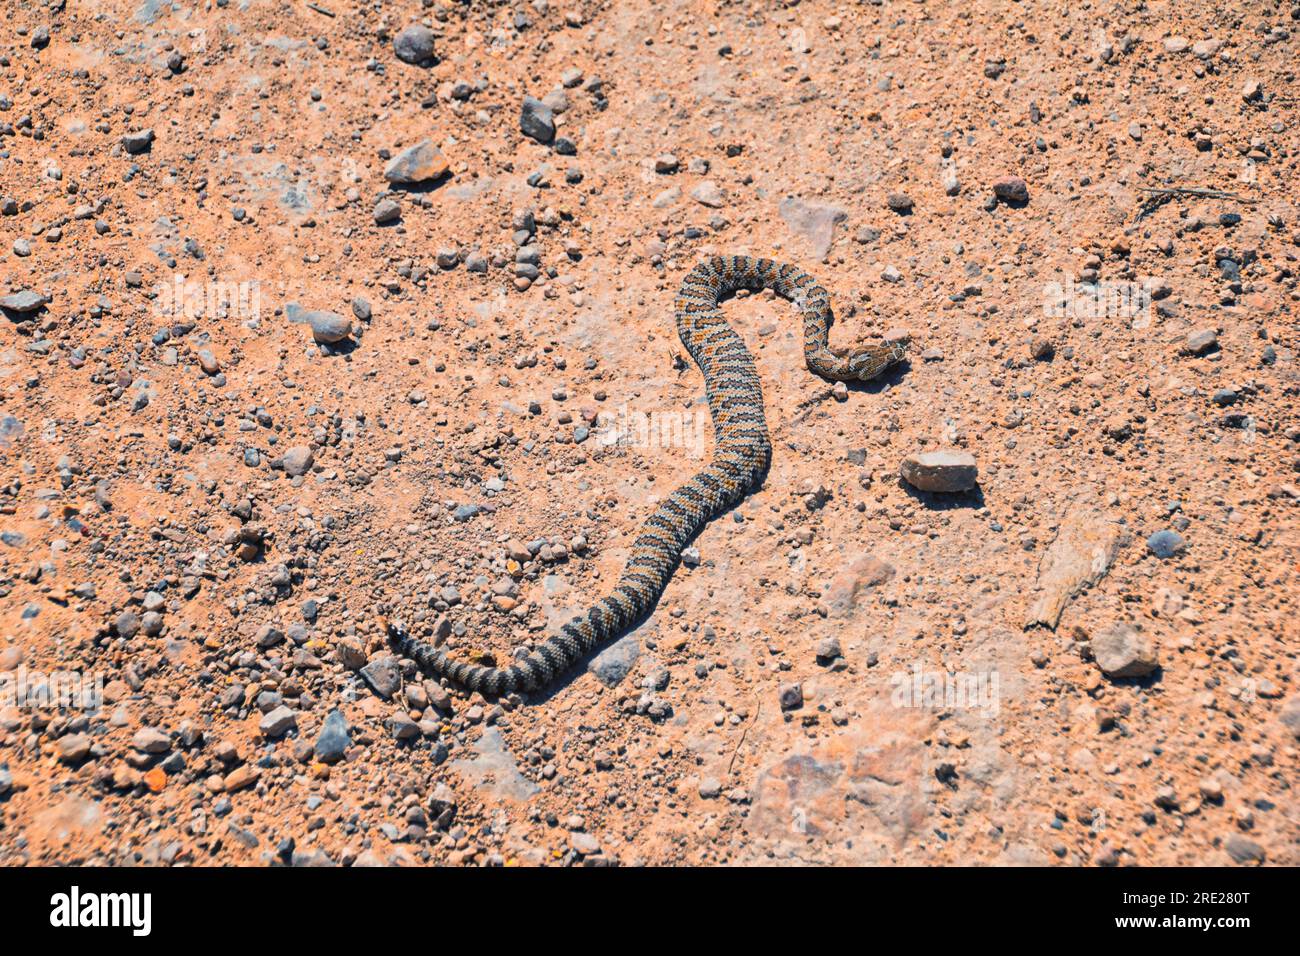 Rattlesnake Great Basin o Midget se desvaneció, Crotalus lutosus o concolor, muerto en la carretera en el sendero de senderismo West Lake Mountain Peak. Bebé, pozo tóxico venenoso Foto de stock